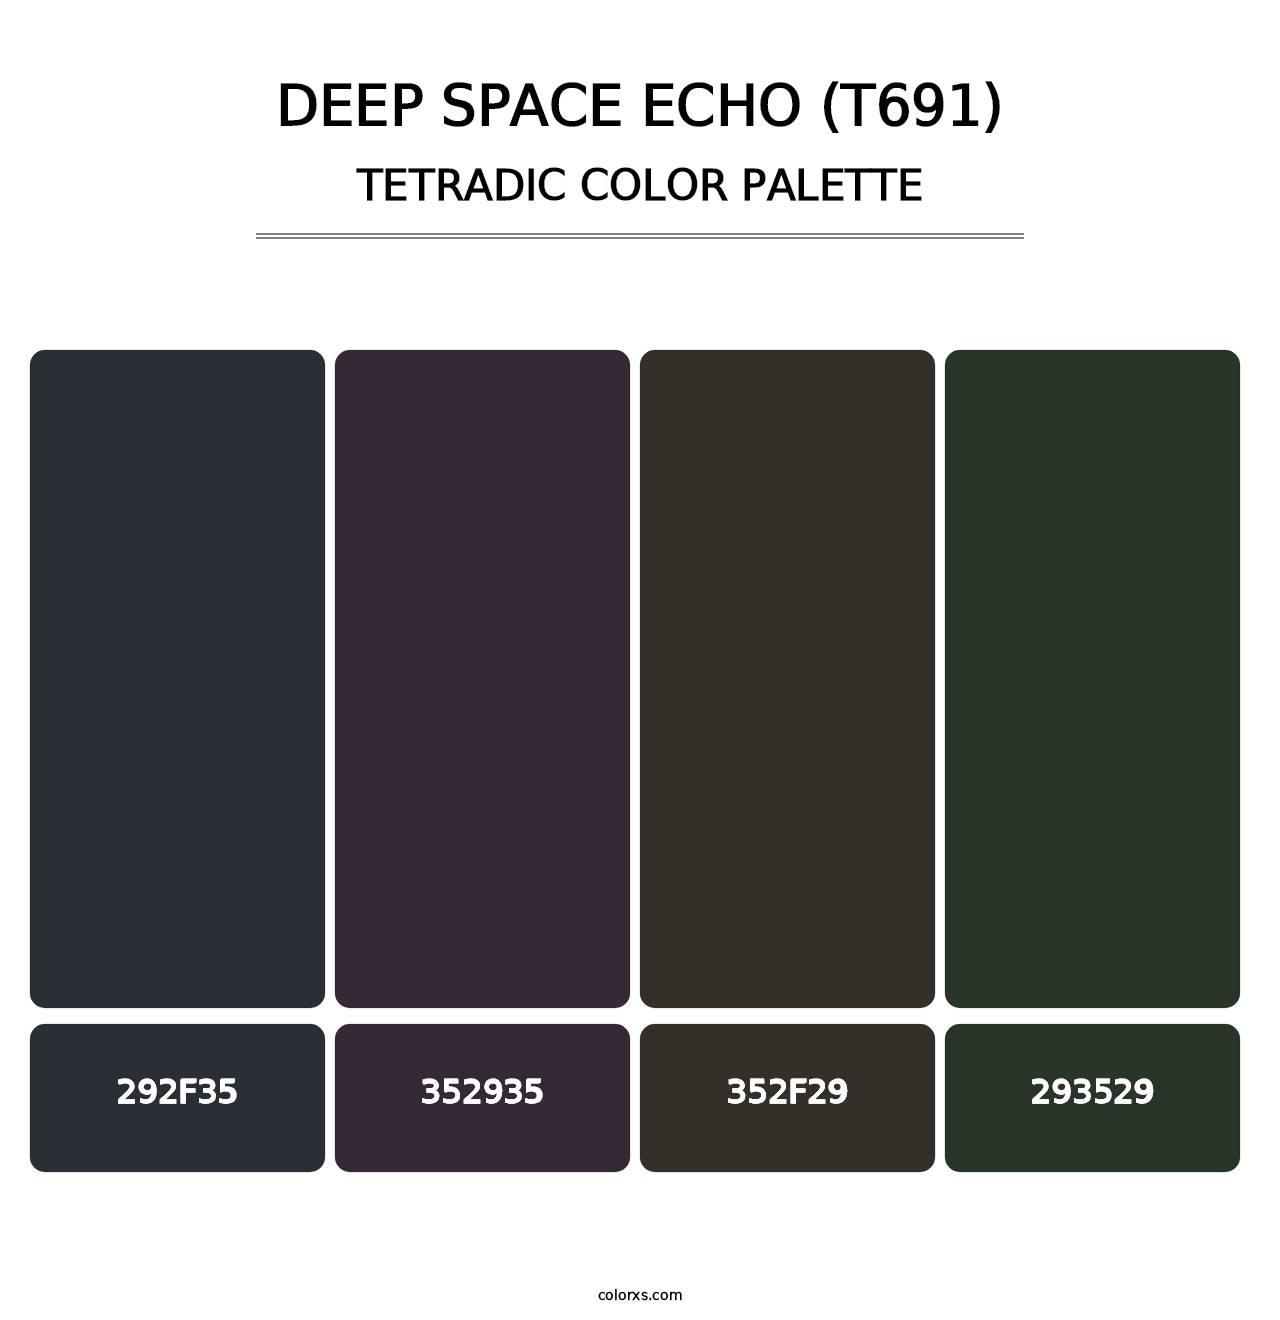 Deep Space Echo (T691) - Tetradic Color Palette